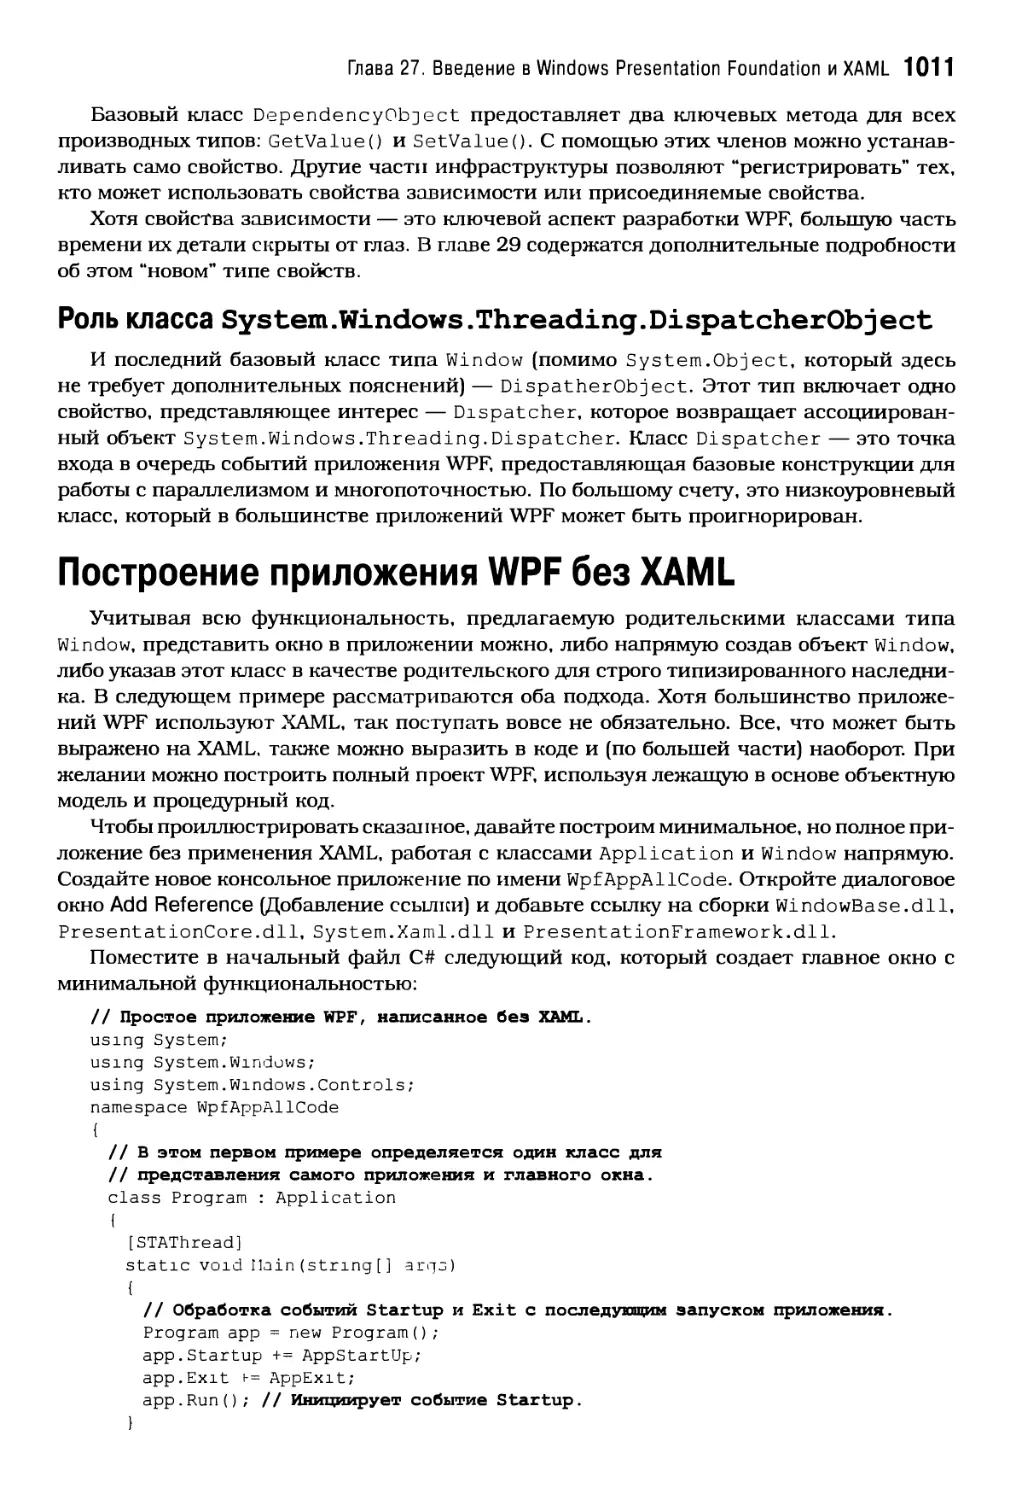 Роль класса System.Windows.Threading.DispatcherObject
Построение приложения WPF без XAML